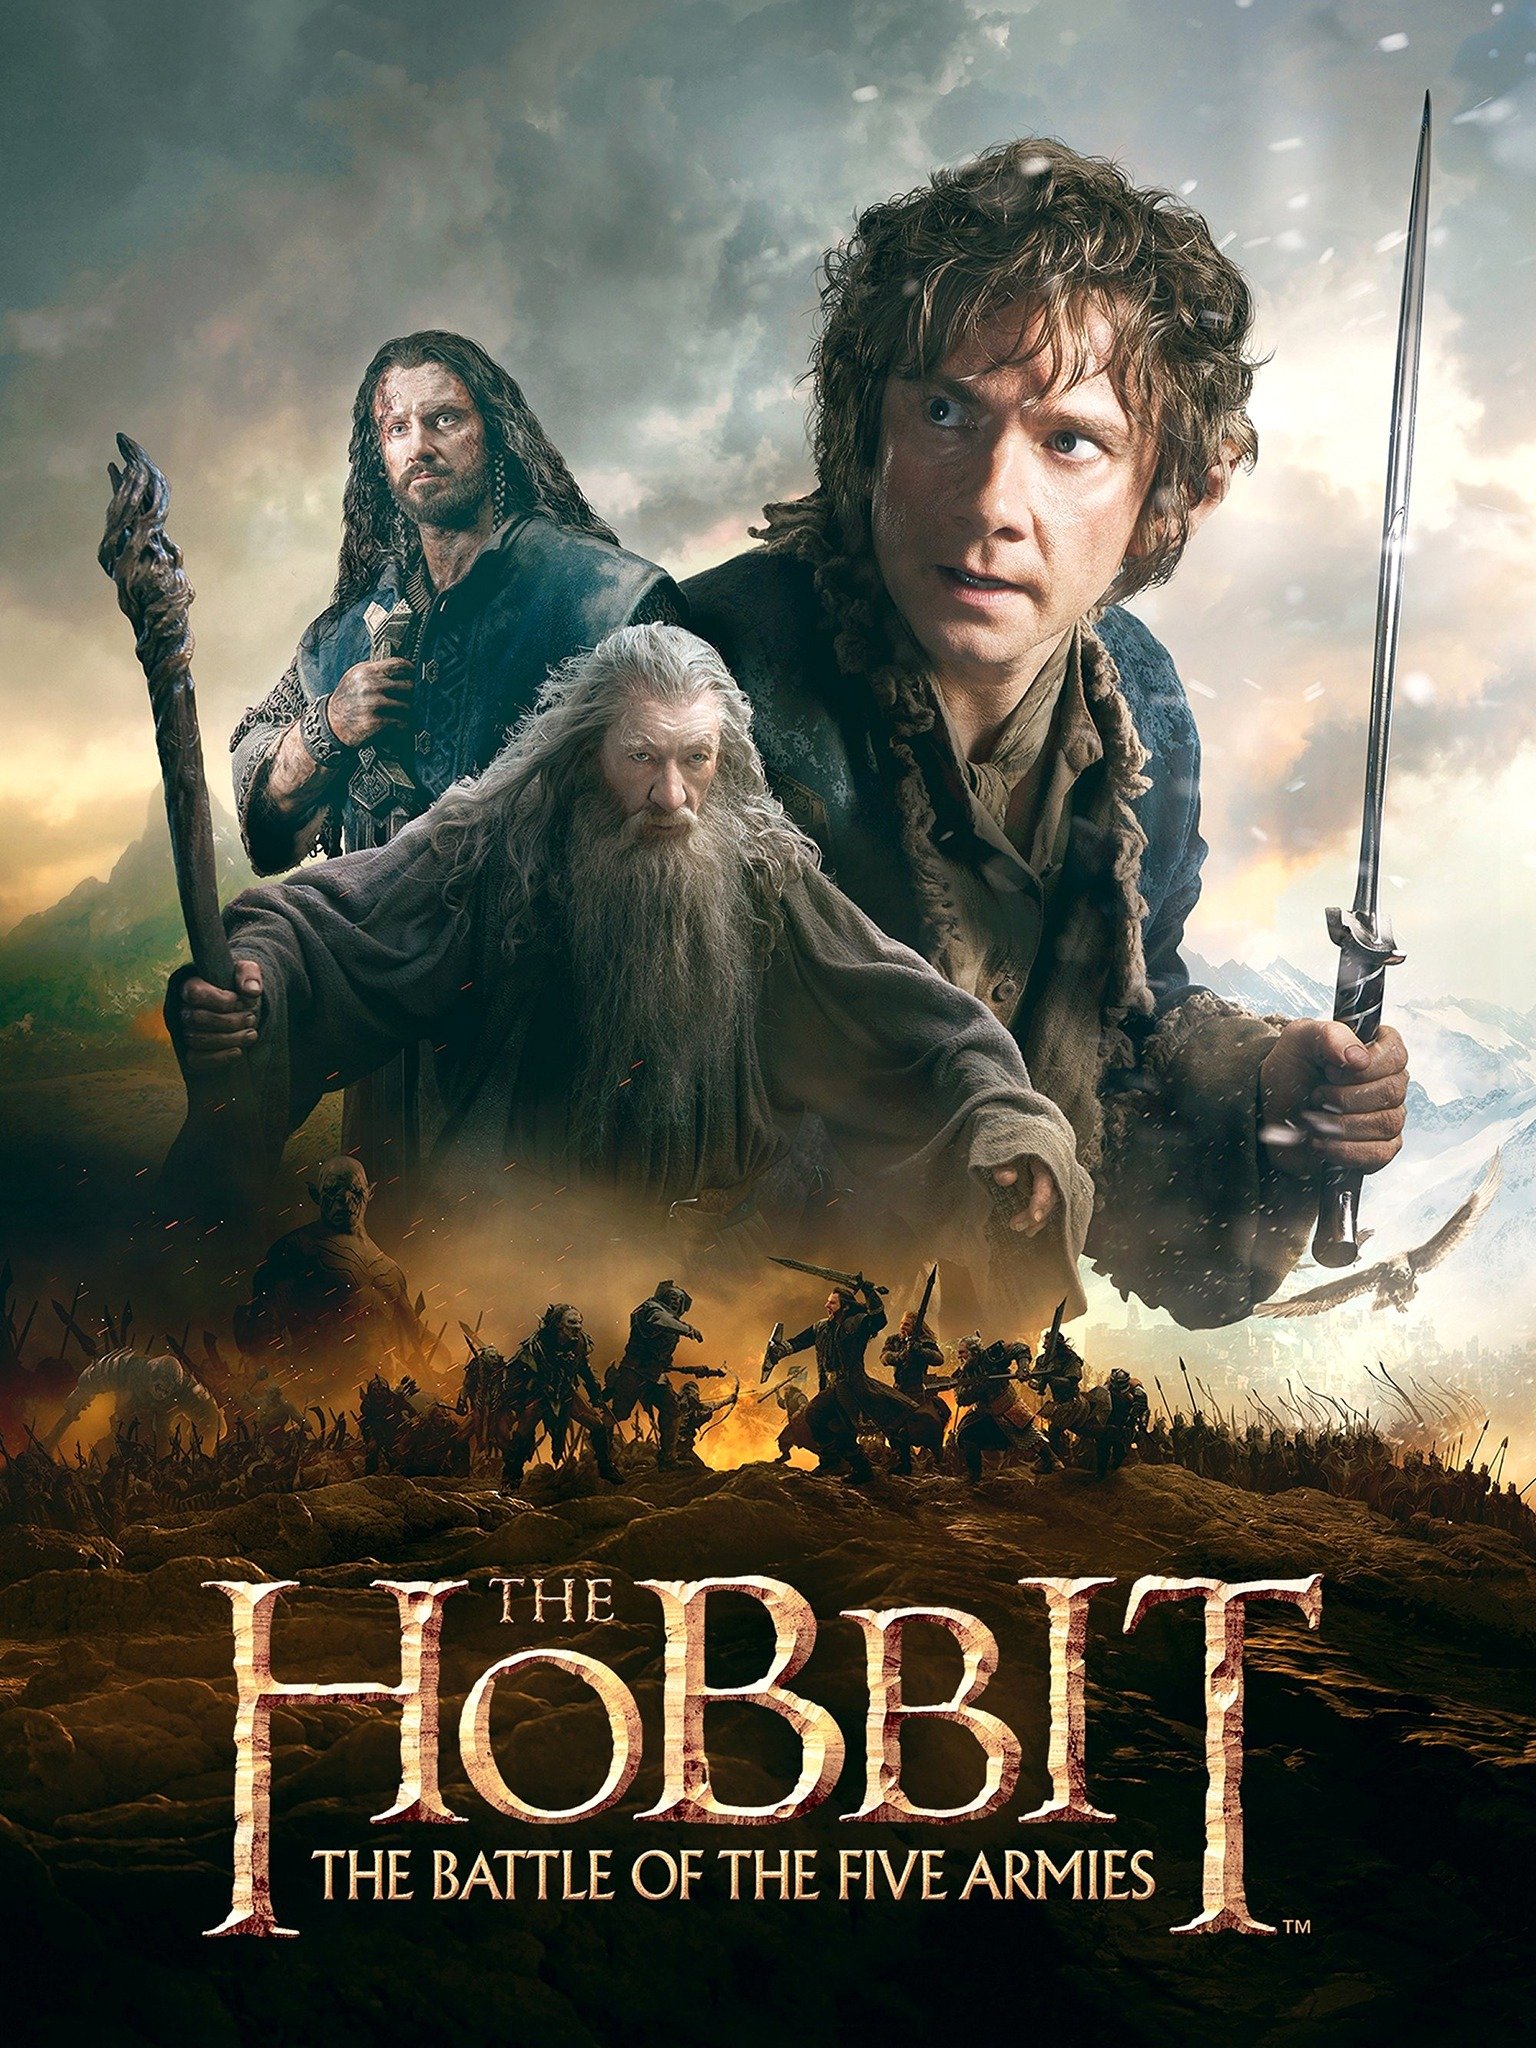 20-فیلم هابیت: نبرد پنج ارتش 2014 The Hobbit The Battle of the Five Armies